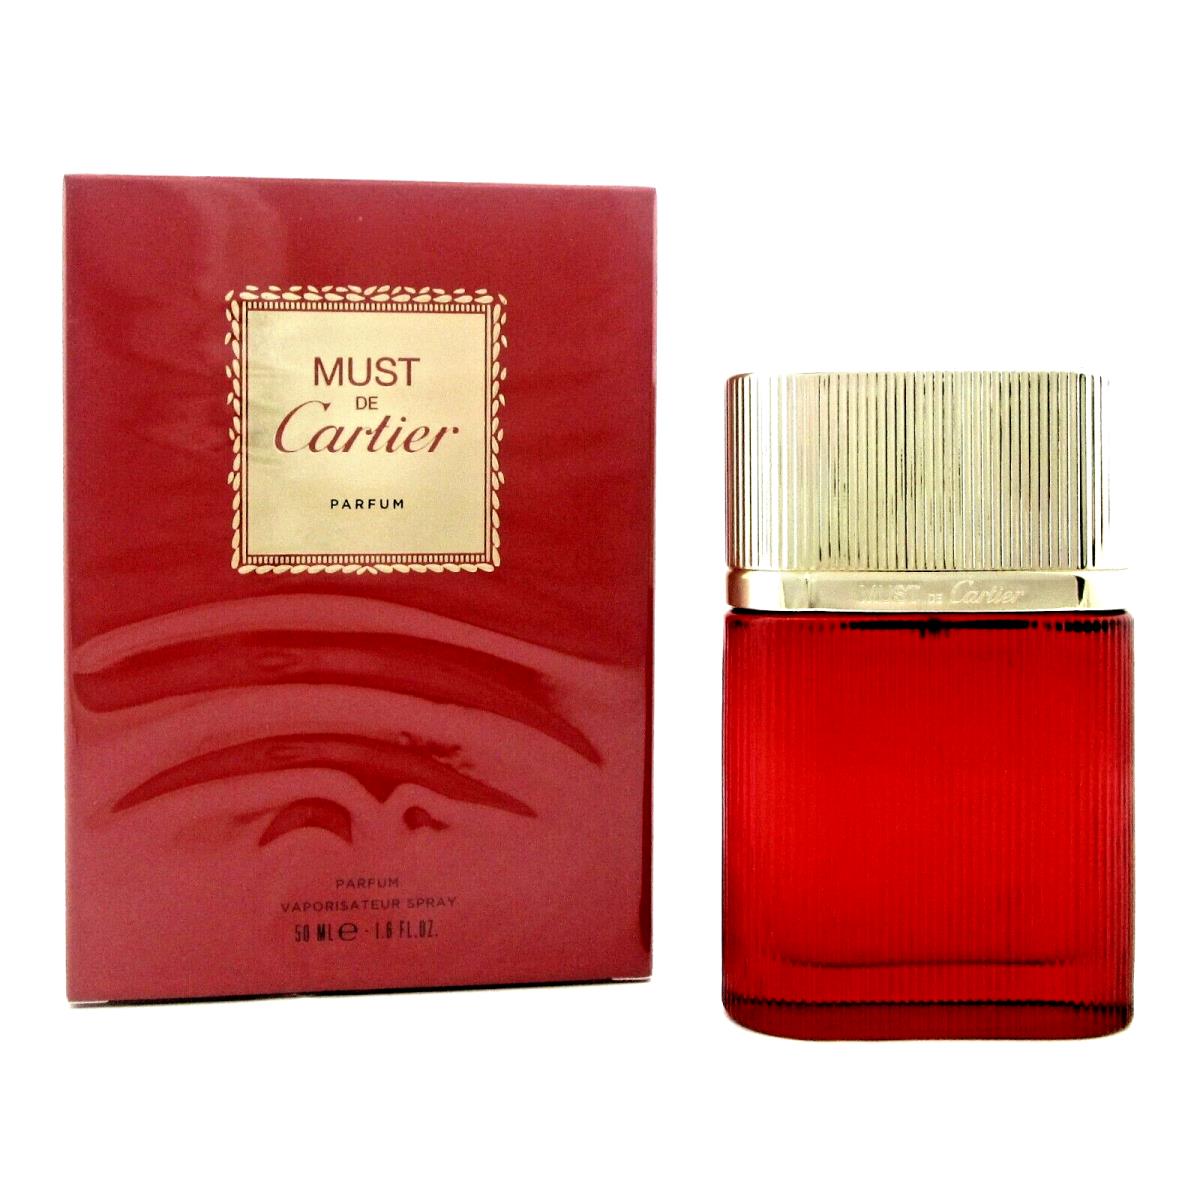 Must De Cartier by Cartier 1.6 oz./50 Ml. Parfum Spray For Women. Box